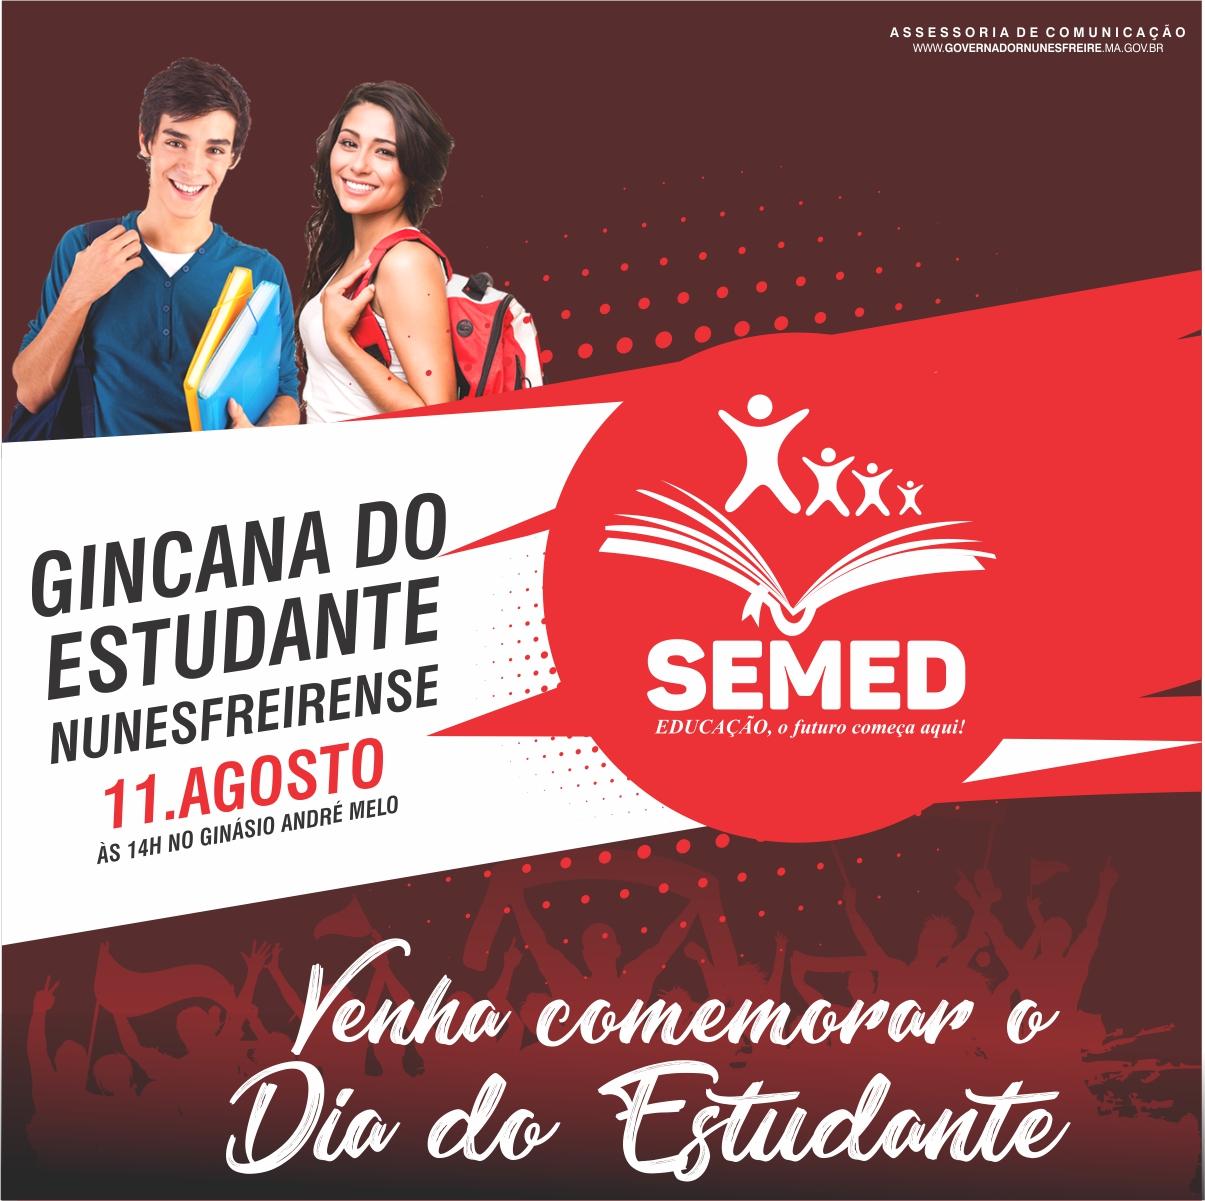 Gincana do Estudante Nunesfreirense acontecerá nesse sábado, 11